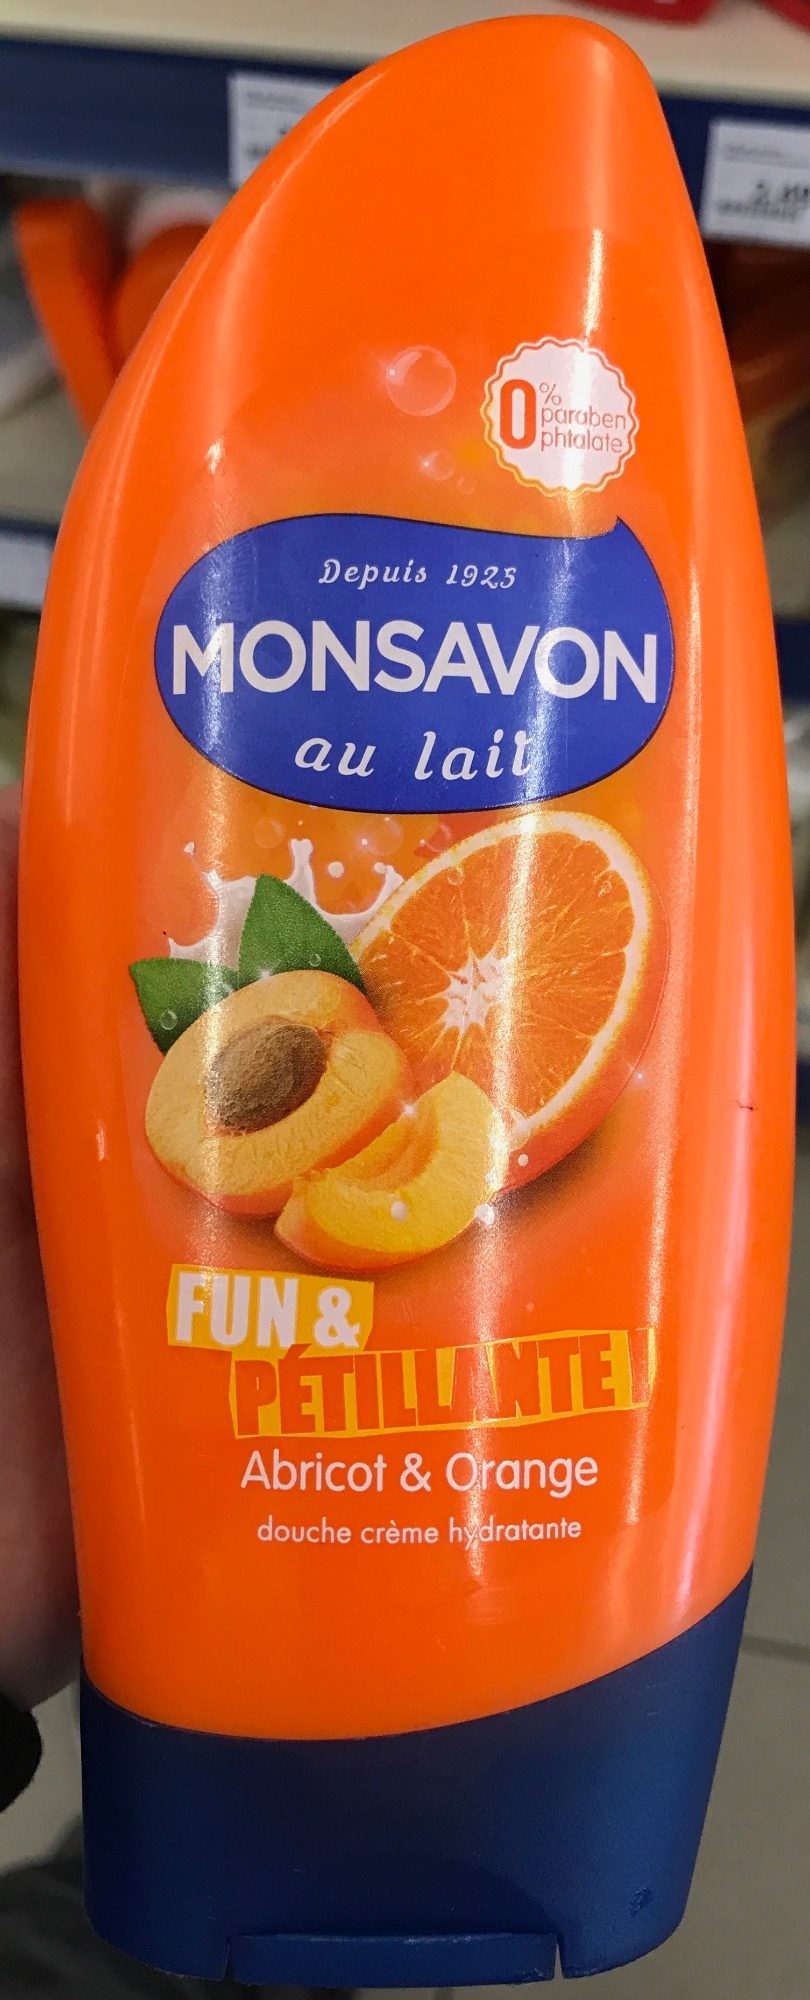 Fun & Pétillante Abricot & Orange - Produit - fr